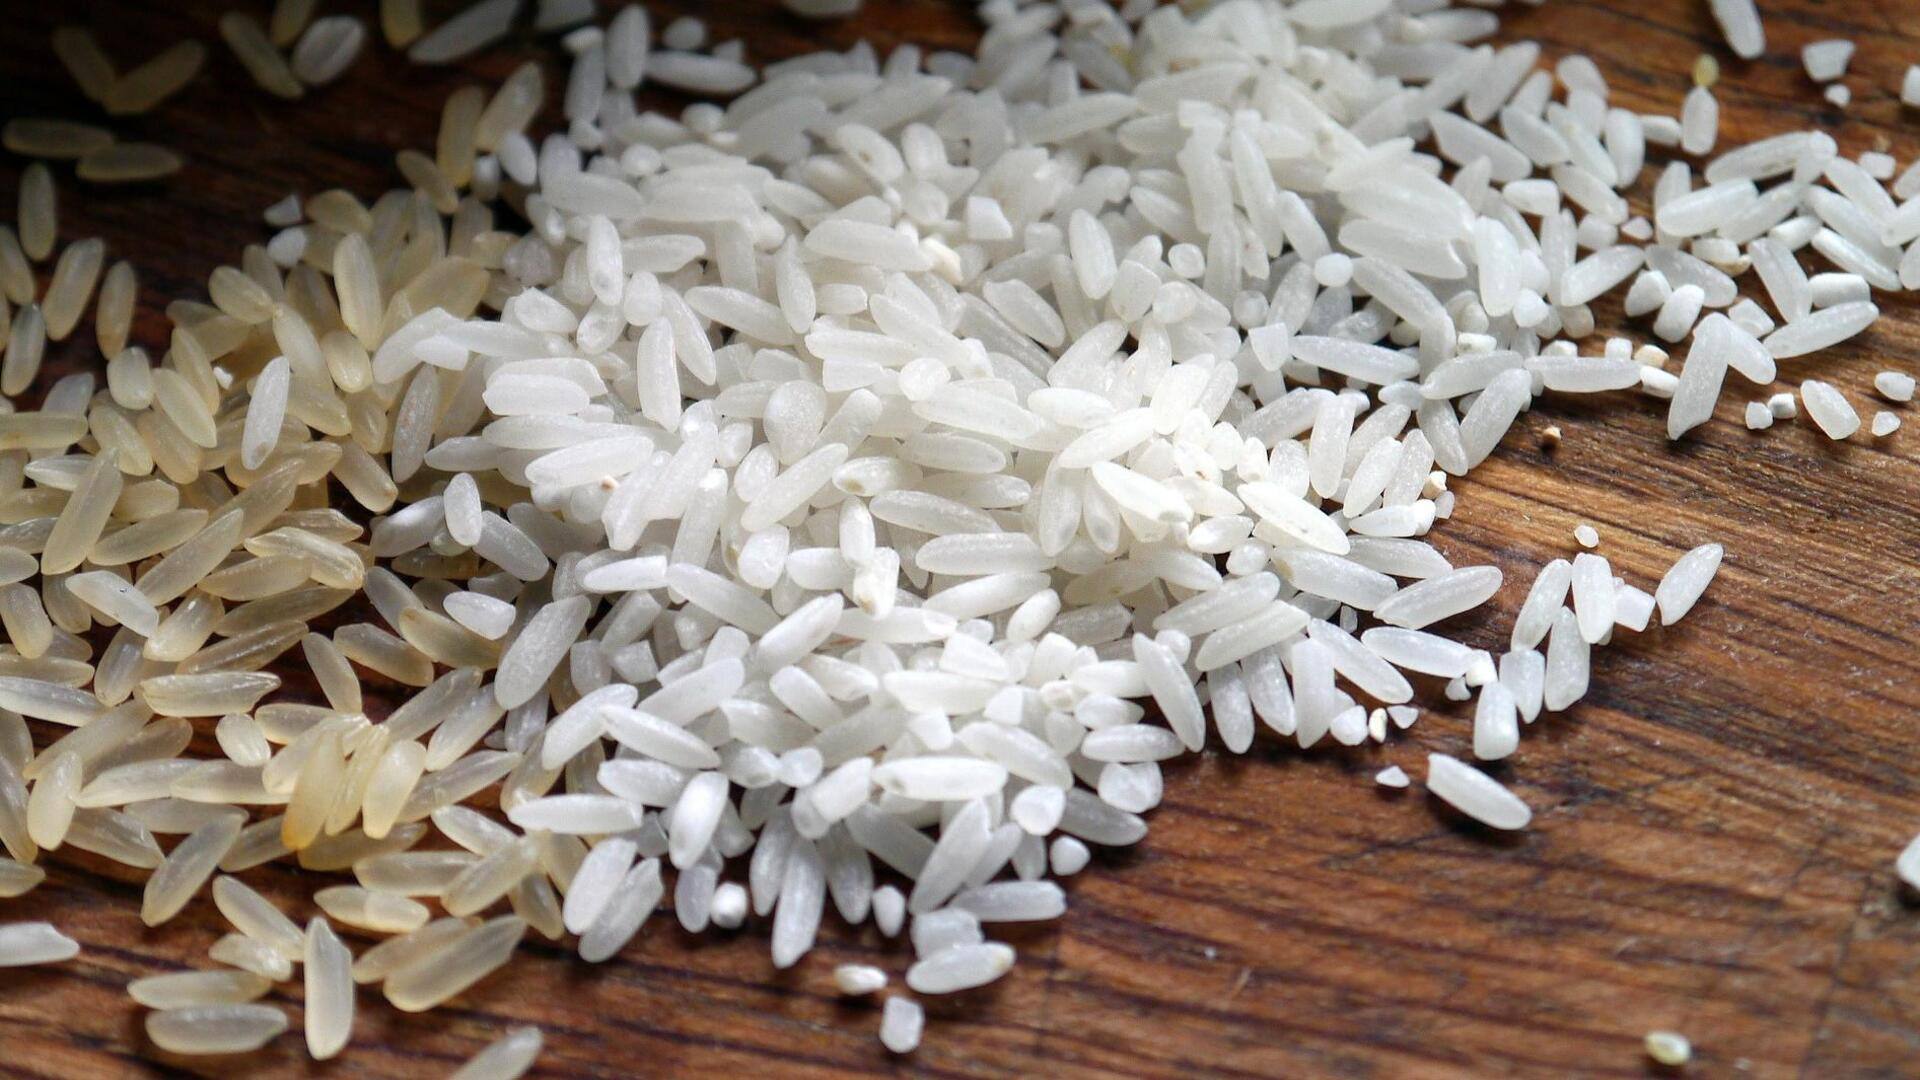 भारत ने गैर-बासमती चावल के निर्यात पर लगाई रोक, जानिए क्या है कारण